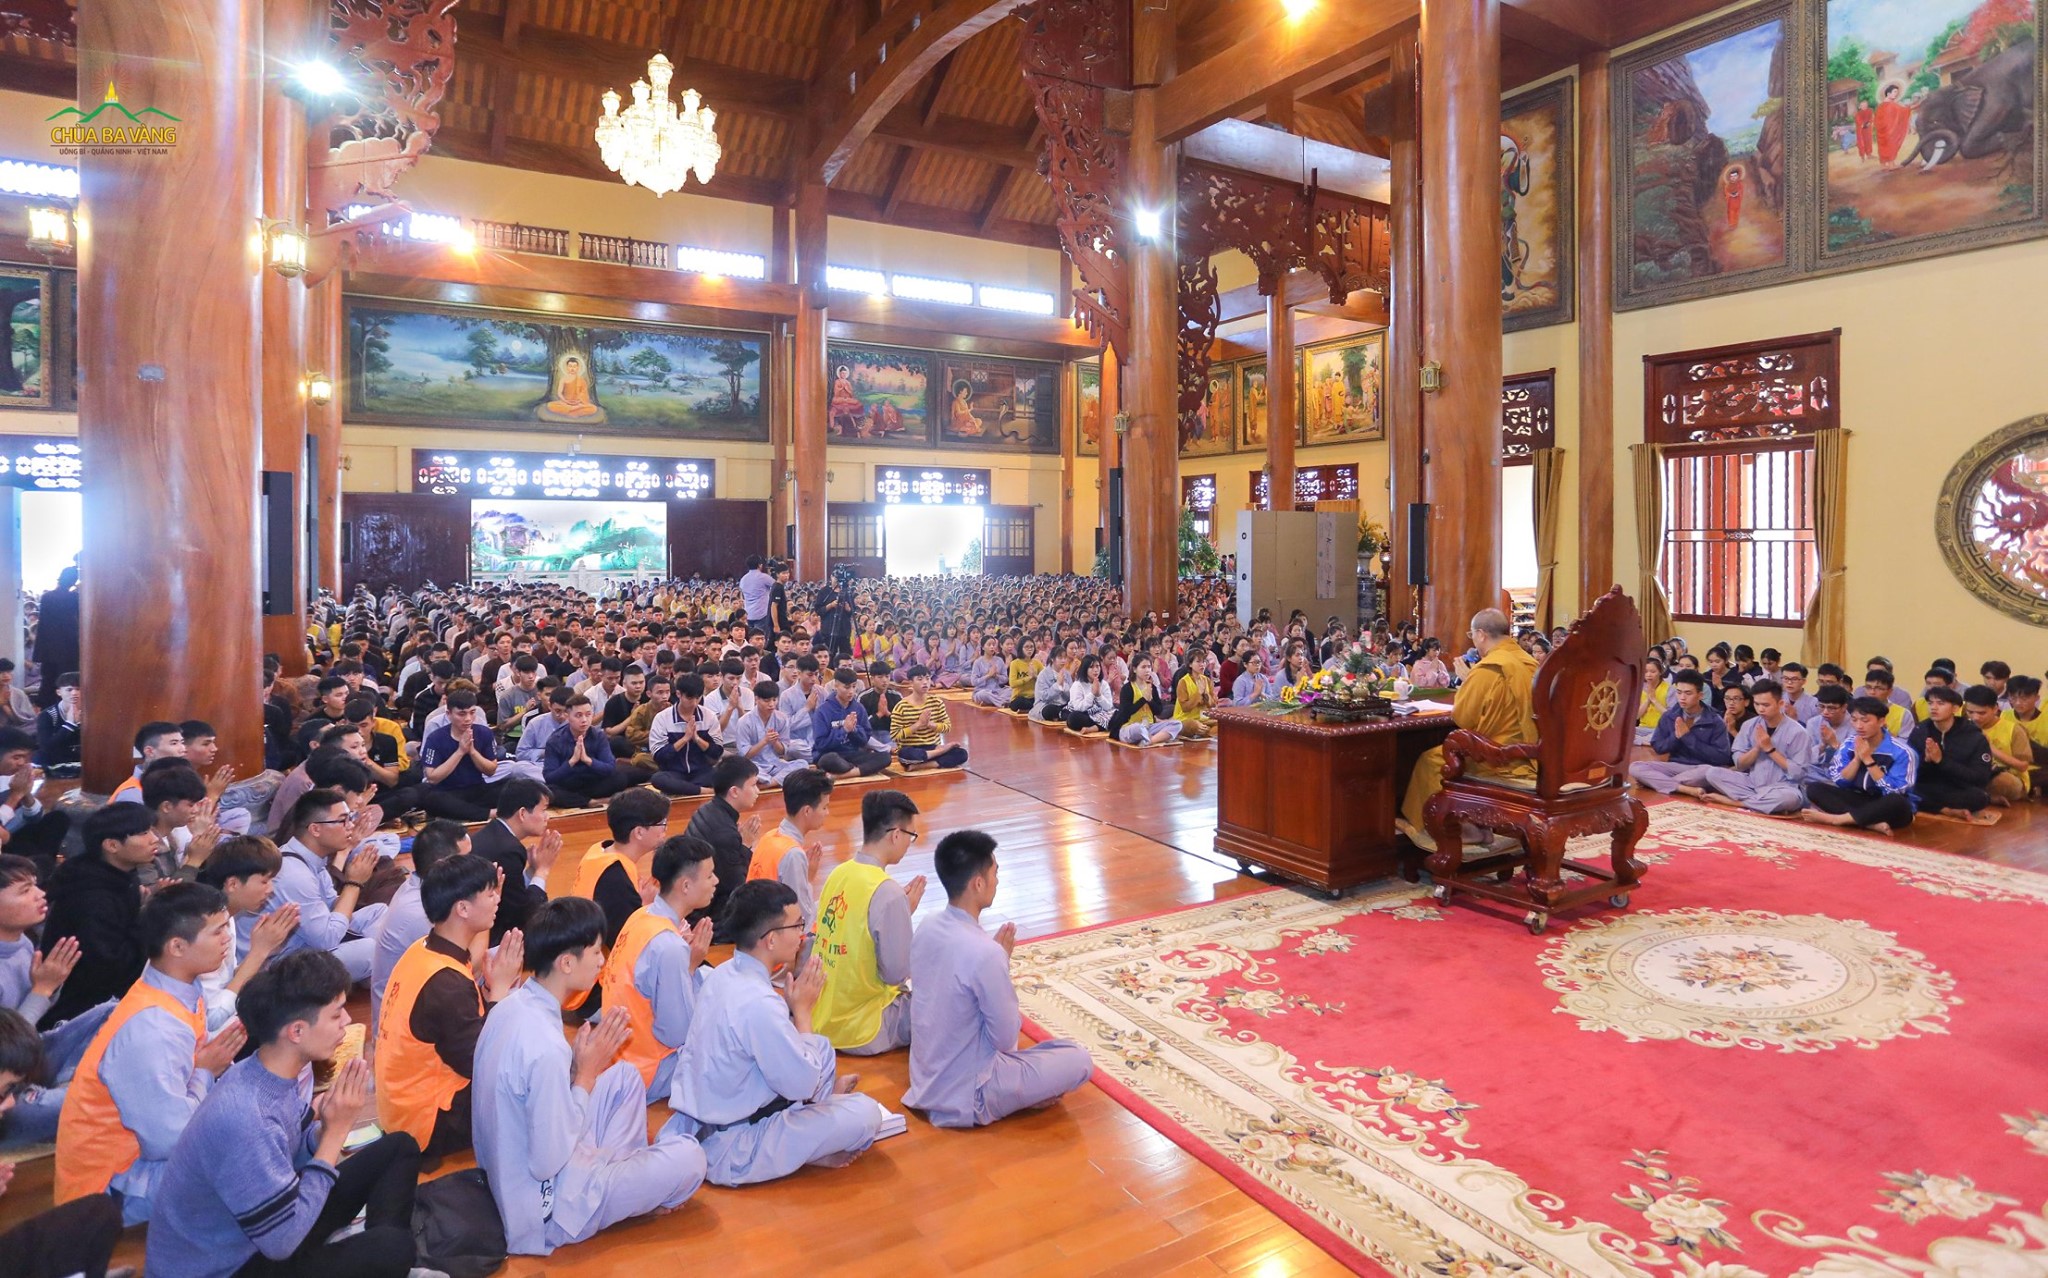 Các chương trình tu học của chùa thu hút hàng nghìn bạn trẻ tham gia